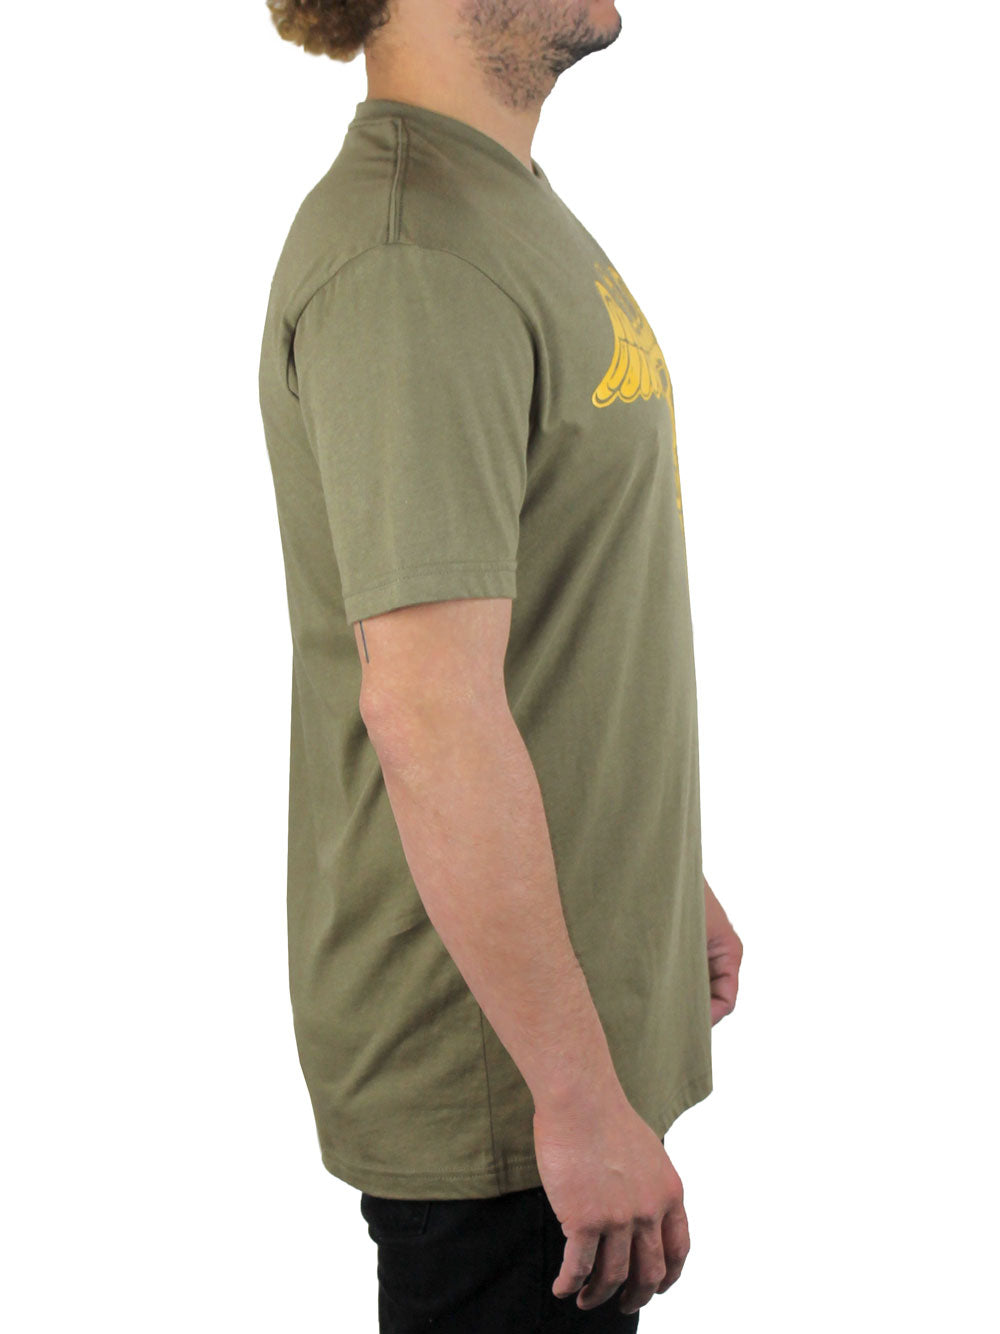 Caduceus T-Shirt Side View